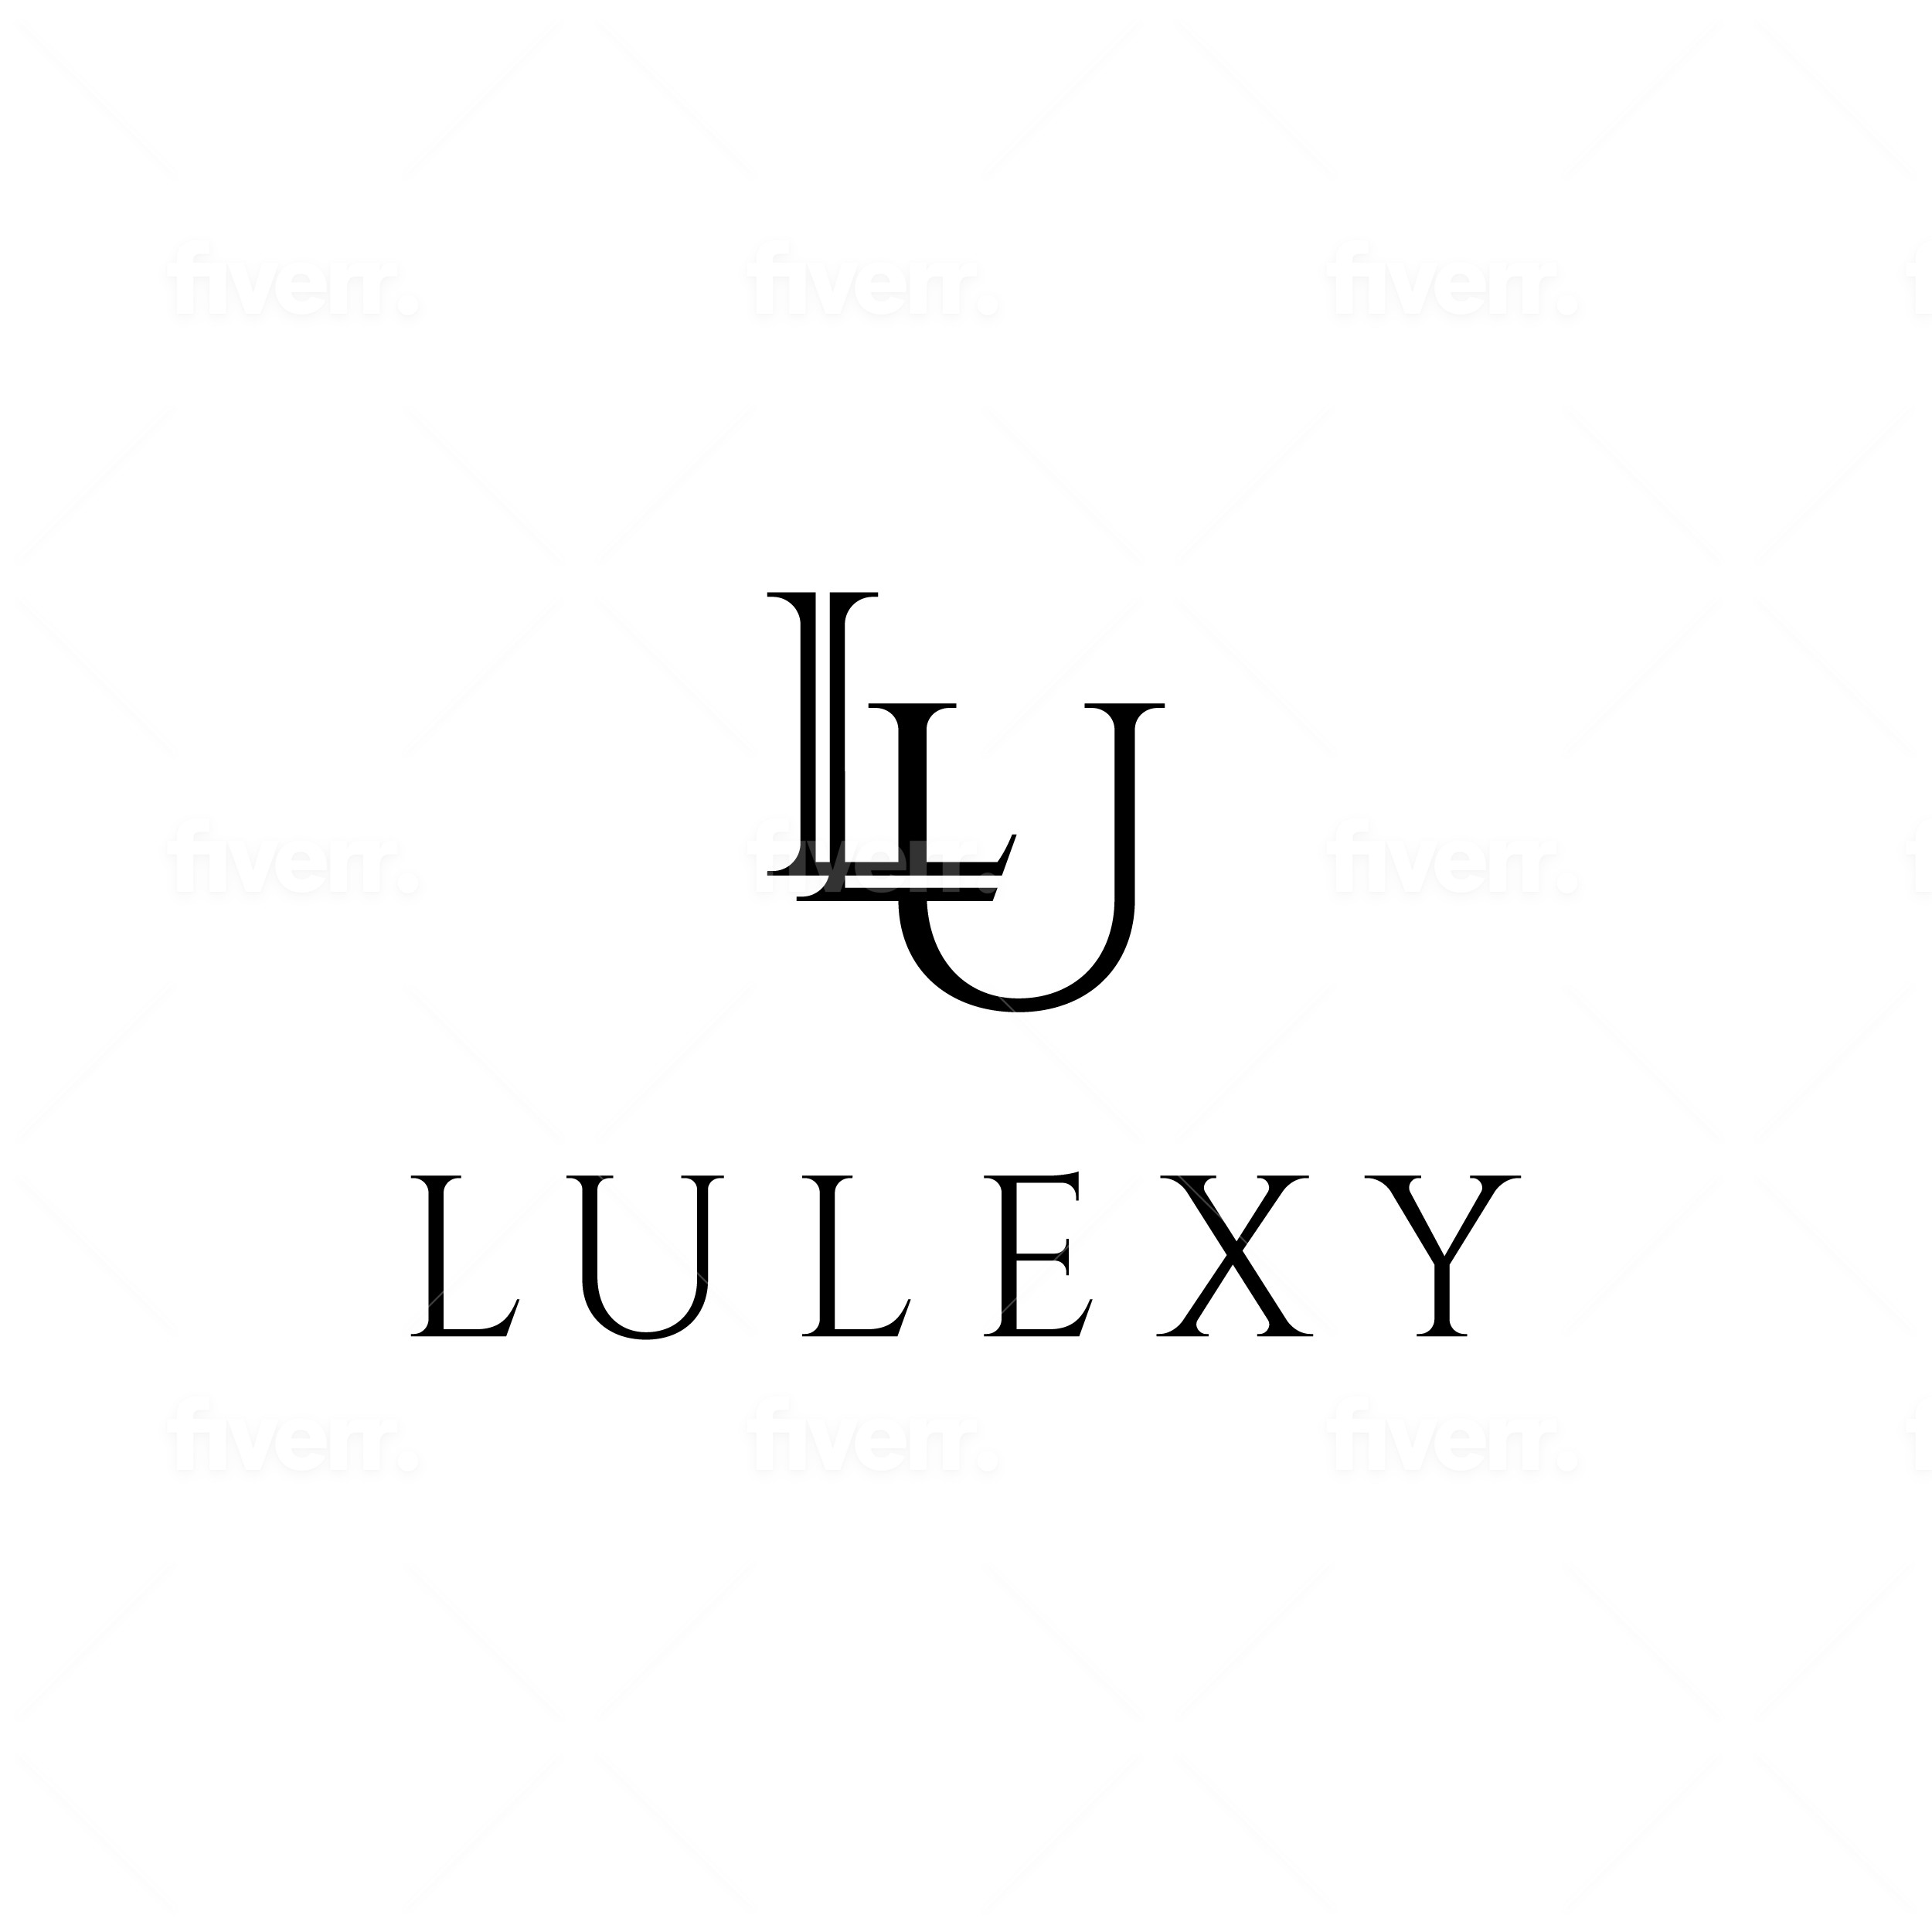 Lulexy